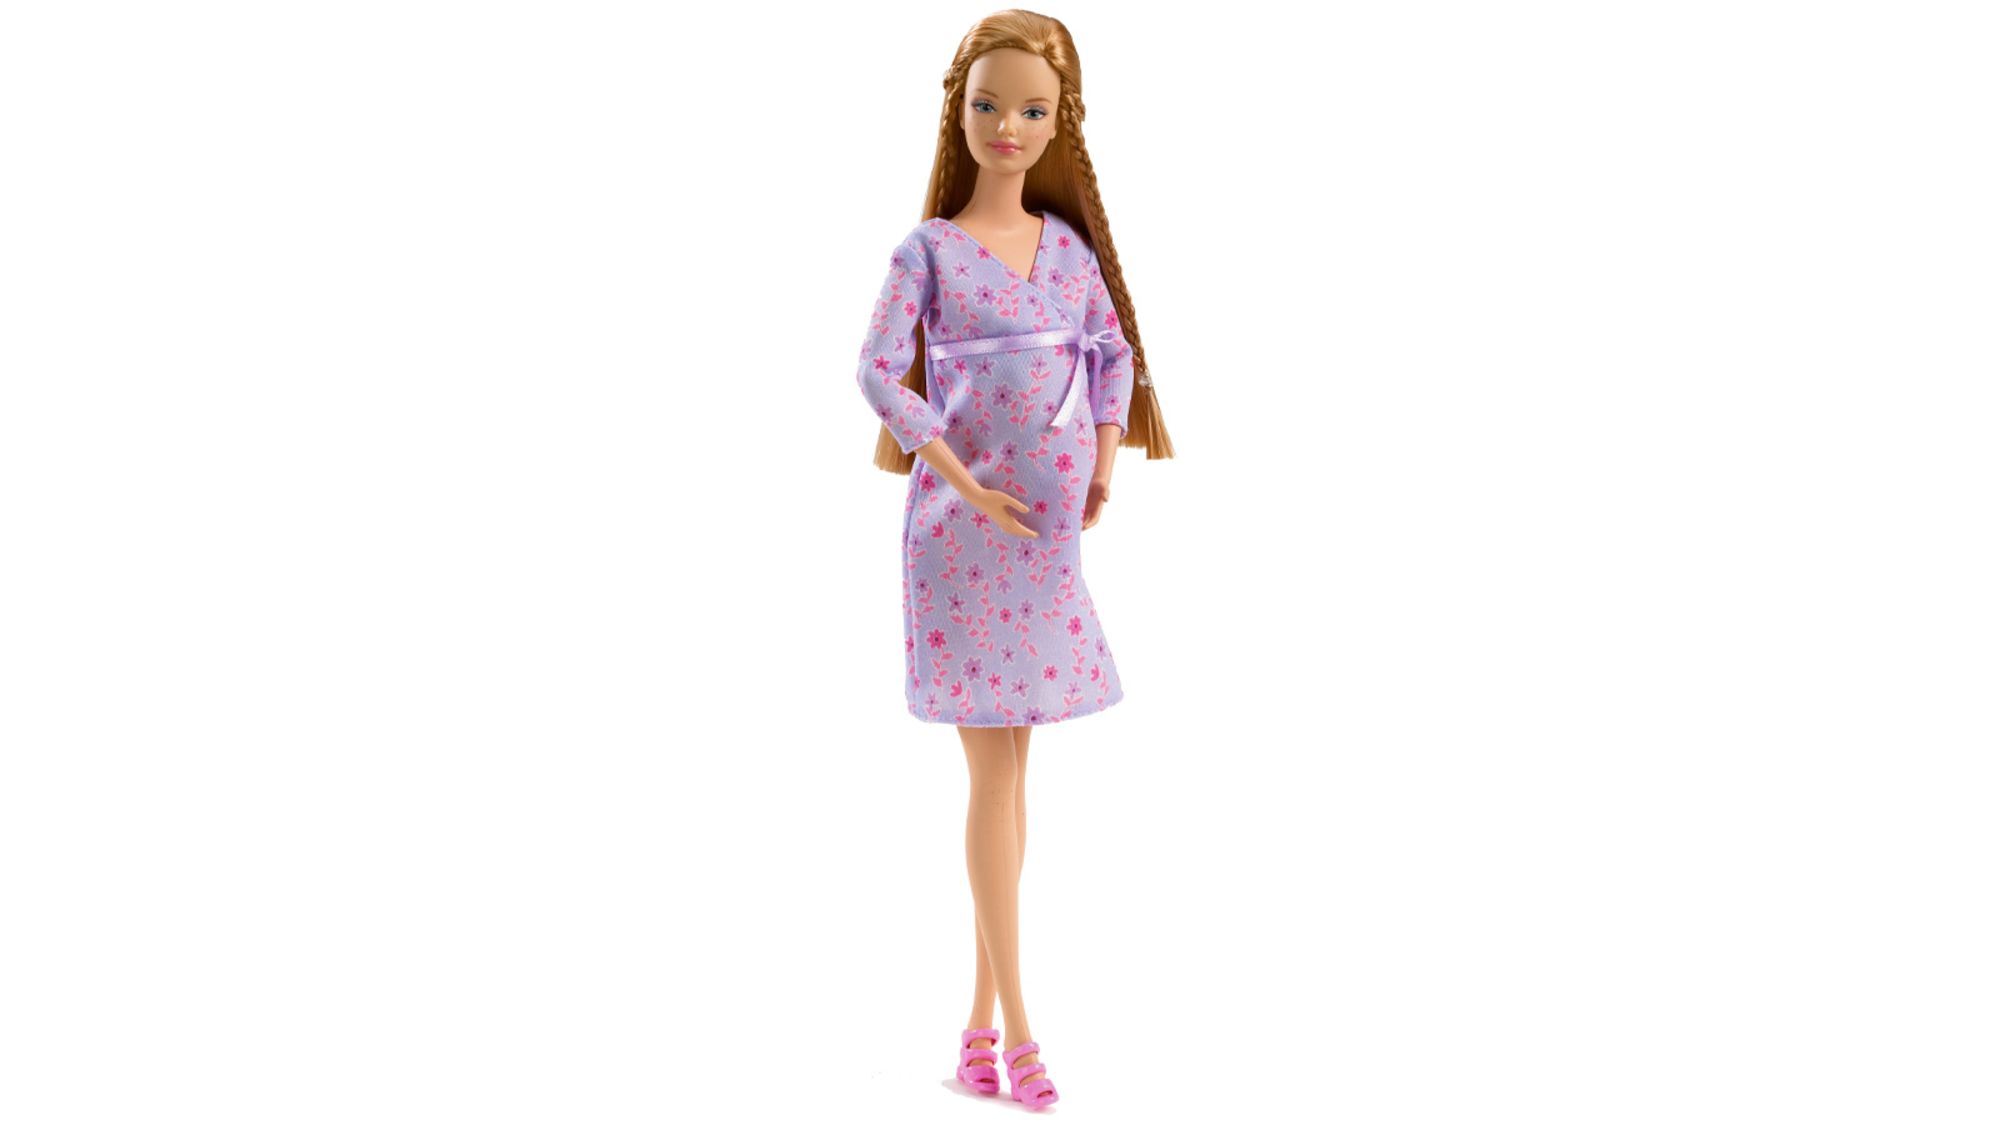 Midge is back in the movie "Barbie" and bringing her bundle of joy.